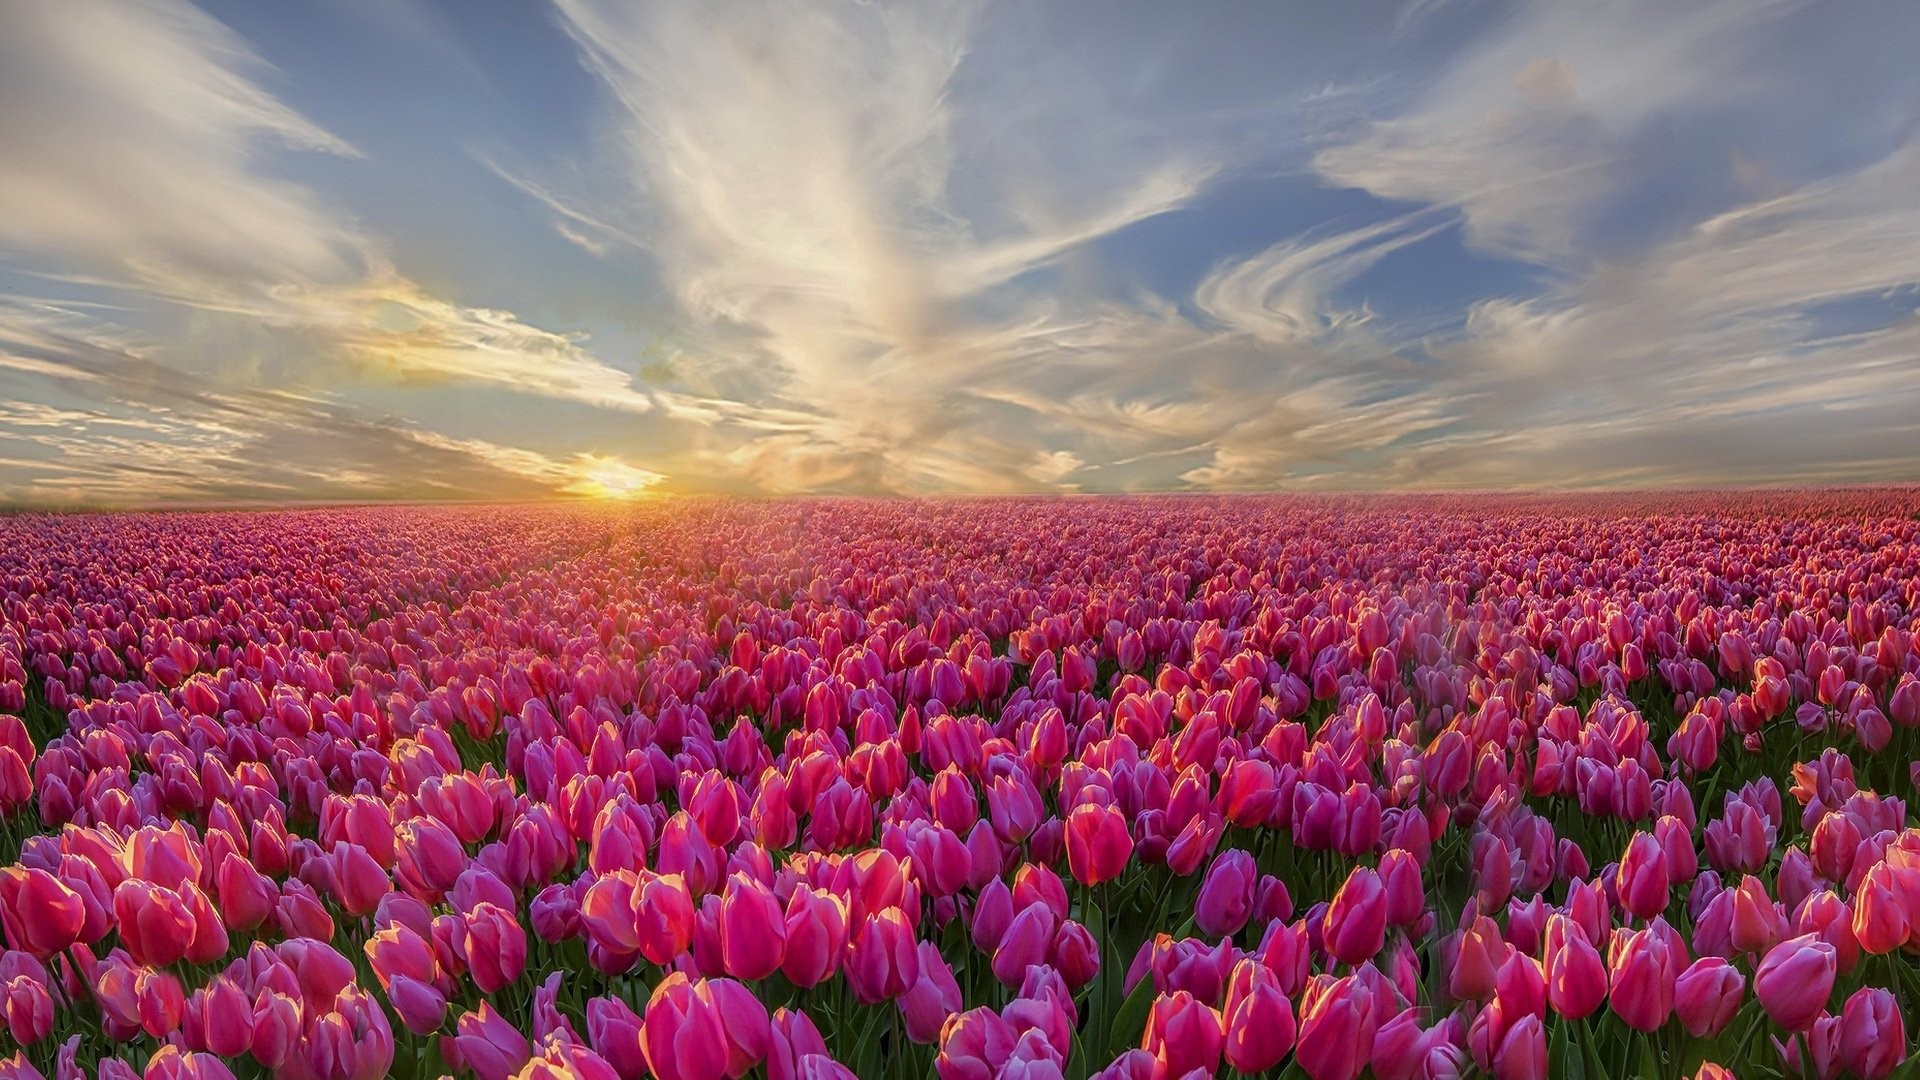 Hình Nền Hoa Tulip Tuyệt Đẹp